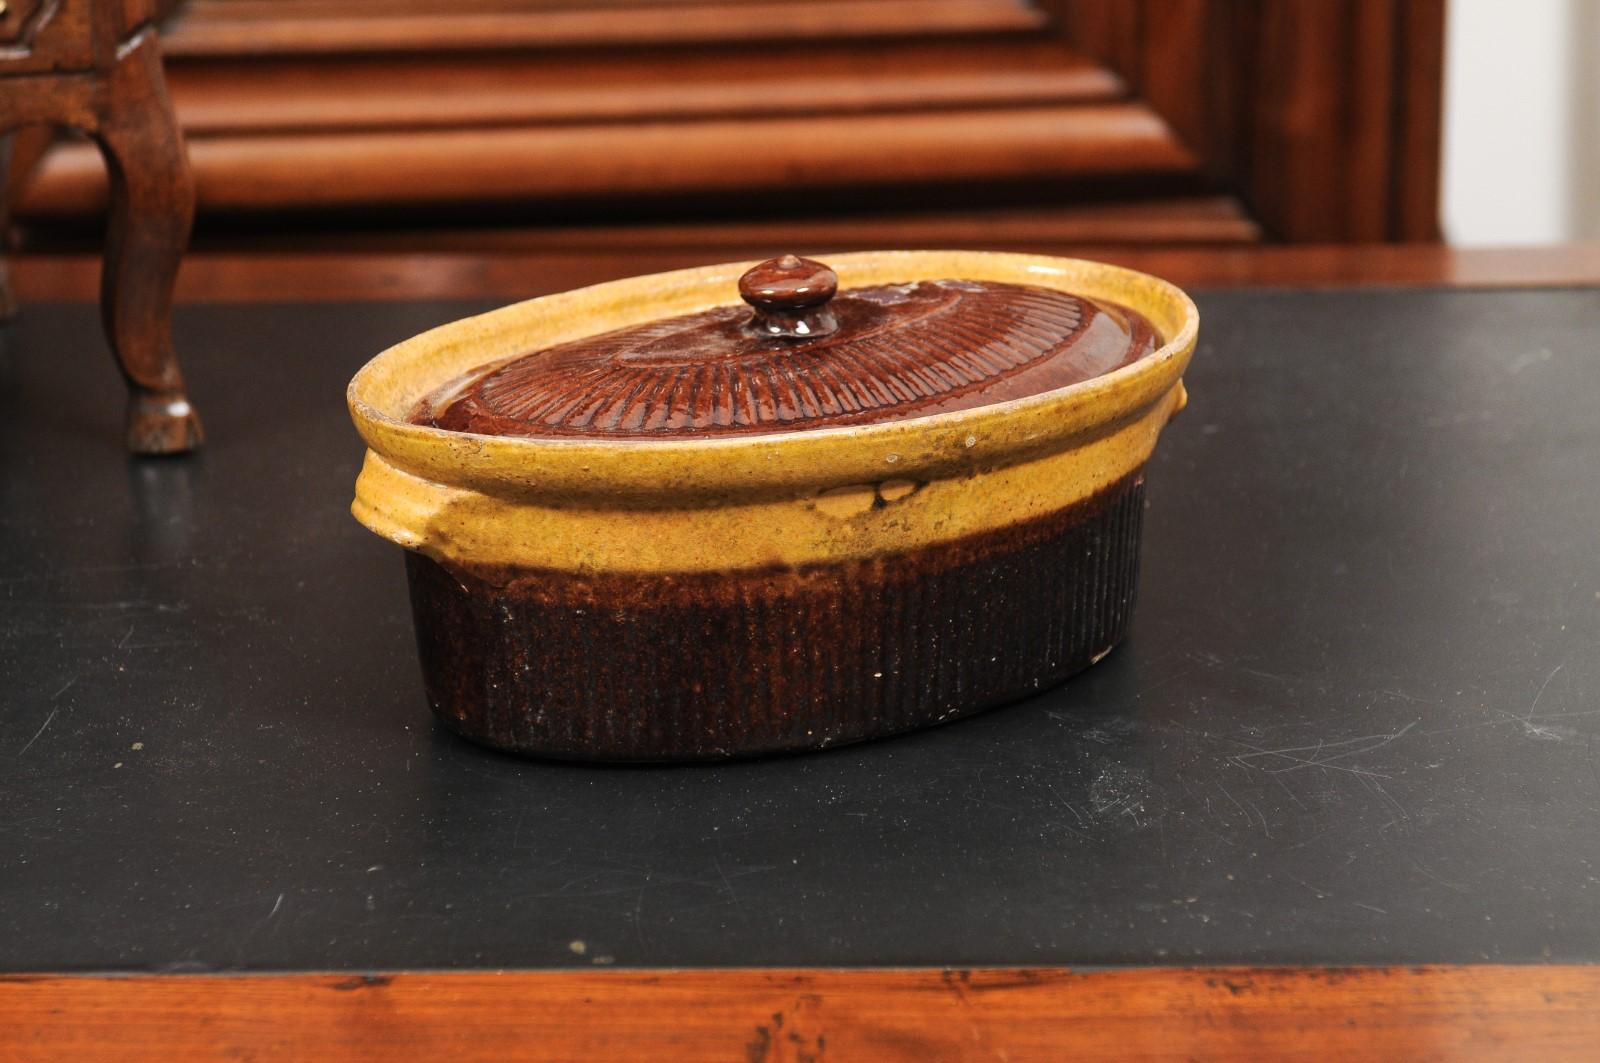 Soupière à pâté couverte rustique du 19e siècle à glaçure brune. Créée en France au XIXe siècle, cette terrine présente un corps ovale traditionnel surmonté d'un couvercle et flanqué de légères poignées. Présentant une glaçure brune et dorée, cette